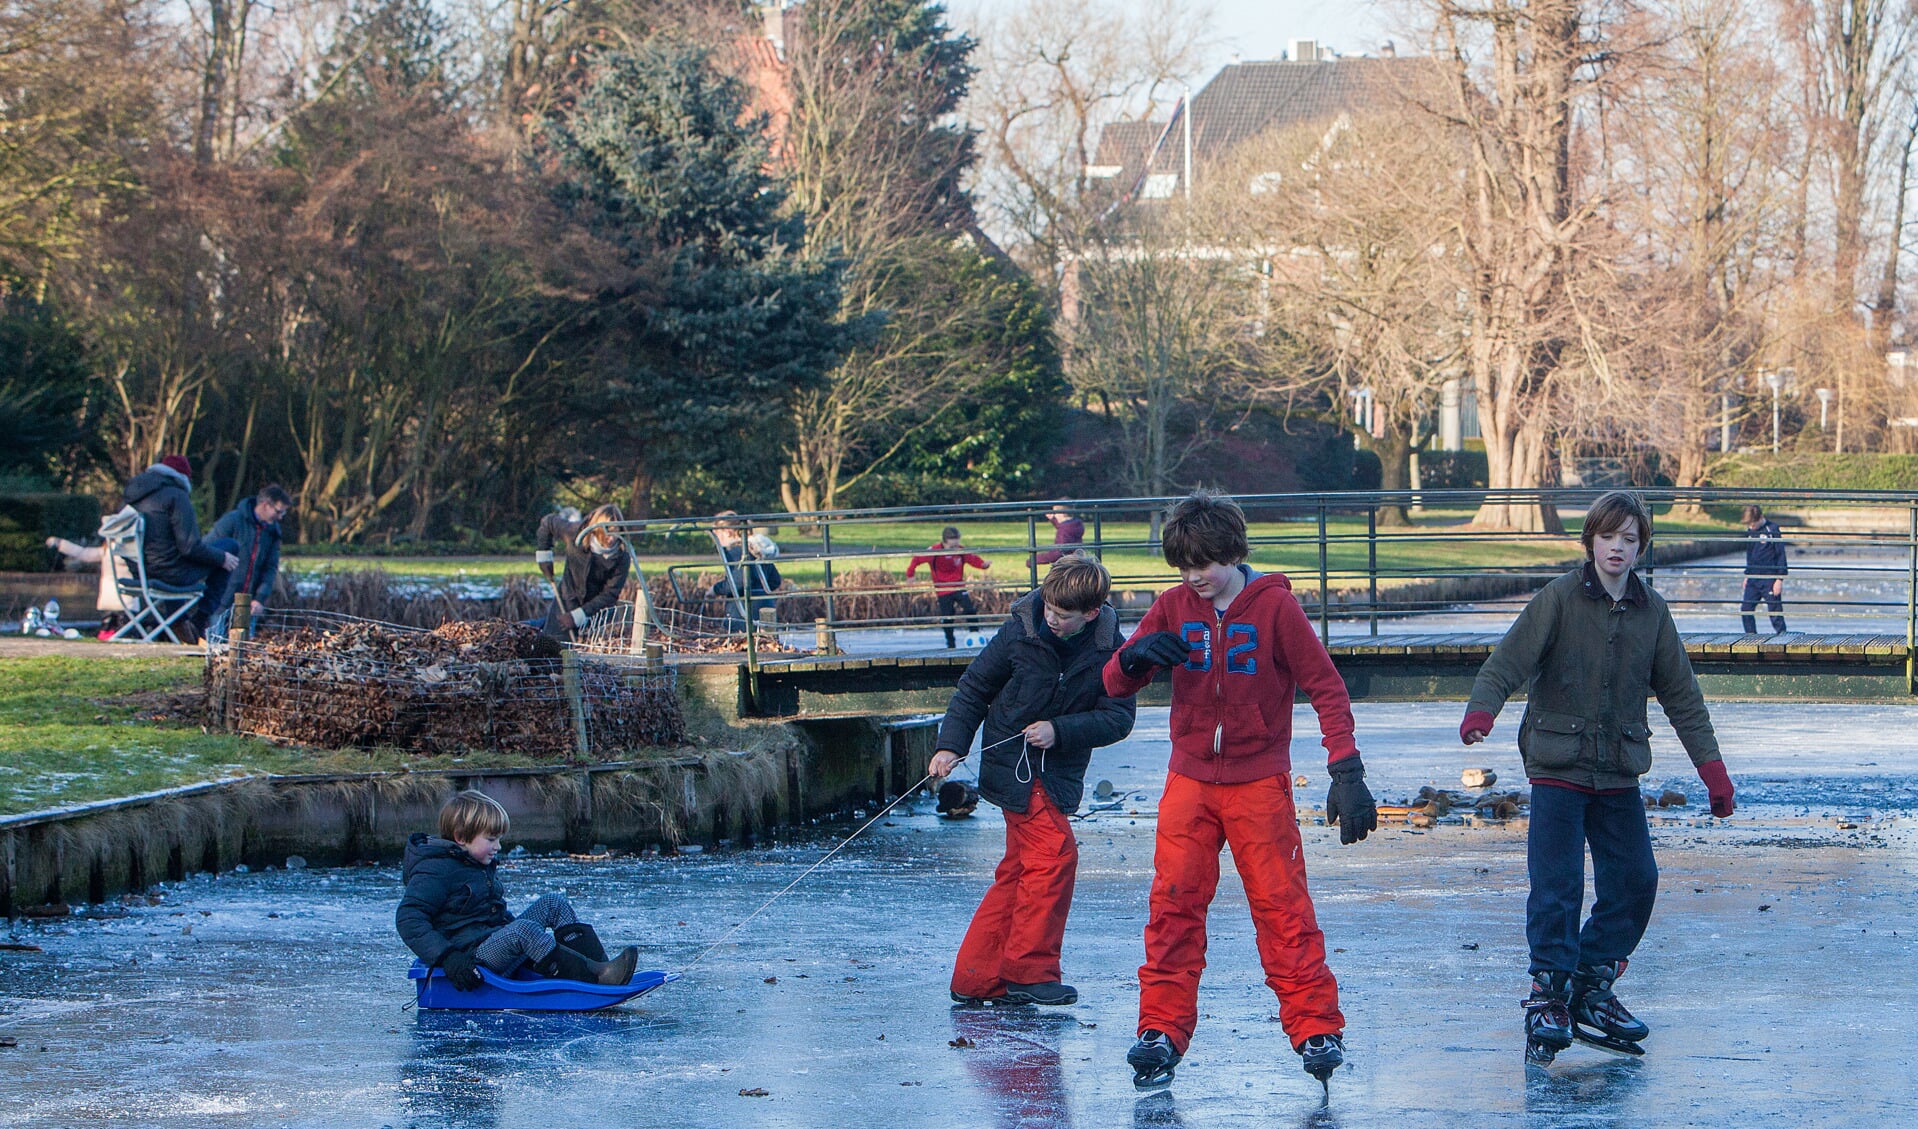 Januari: Het nieuwe jaar begon goed en er was volop schaatspret op de bevroren waters van Bussum. Er werd druk geschaatst op de vijver van het Willem Bilderdijkpark en ook op de vijver van 't Mouwtje.